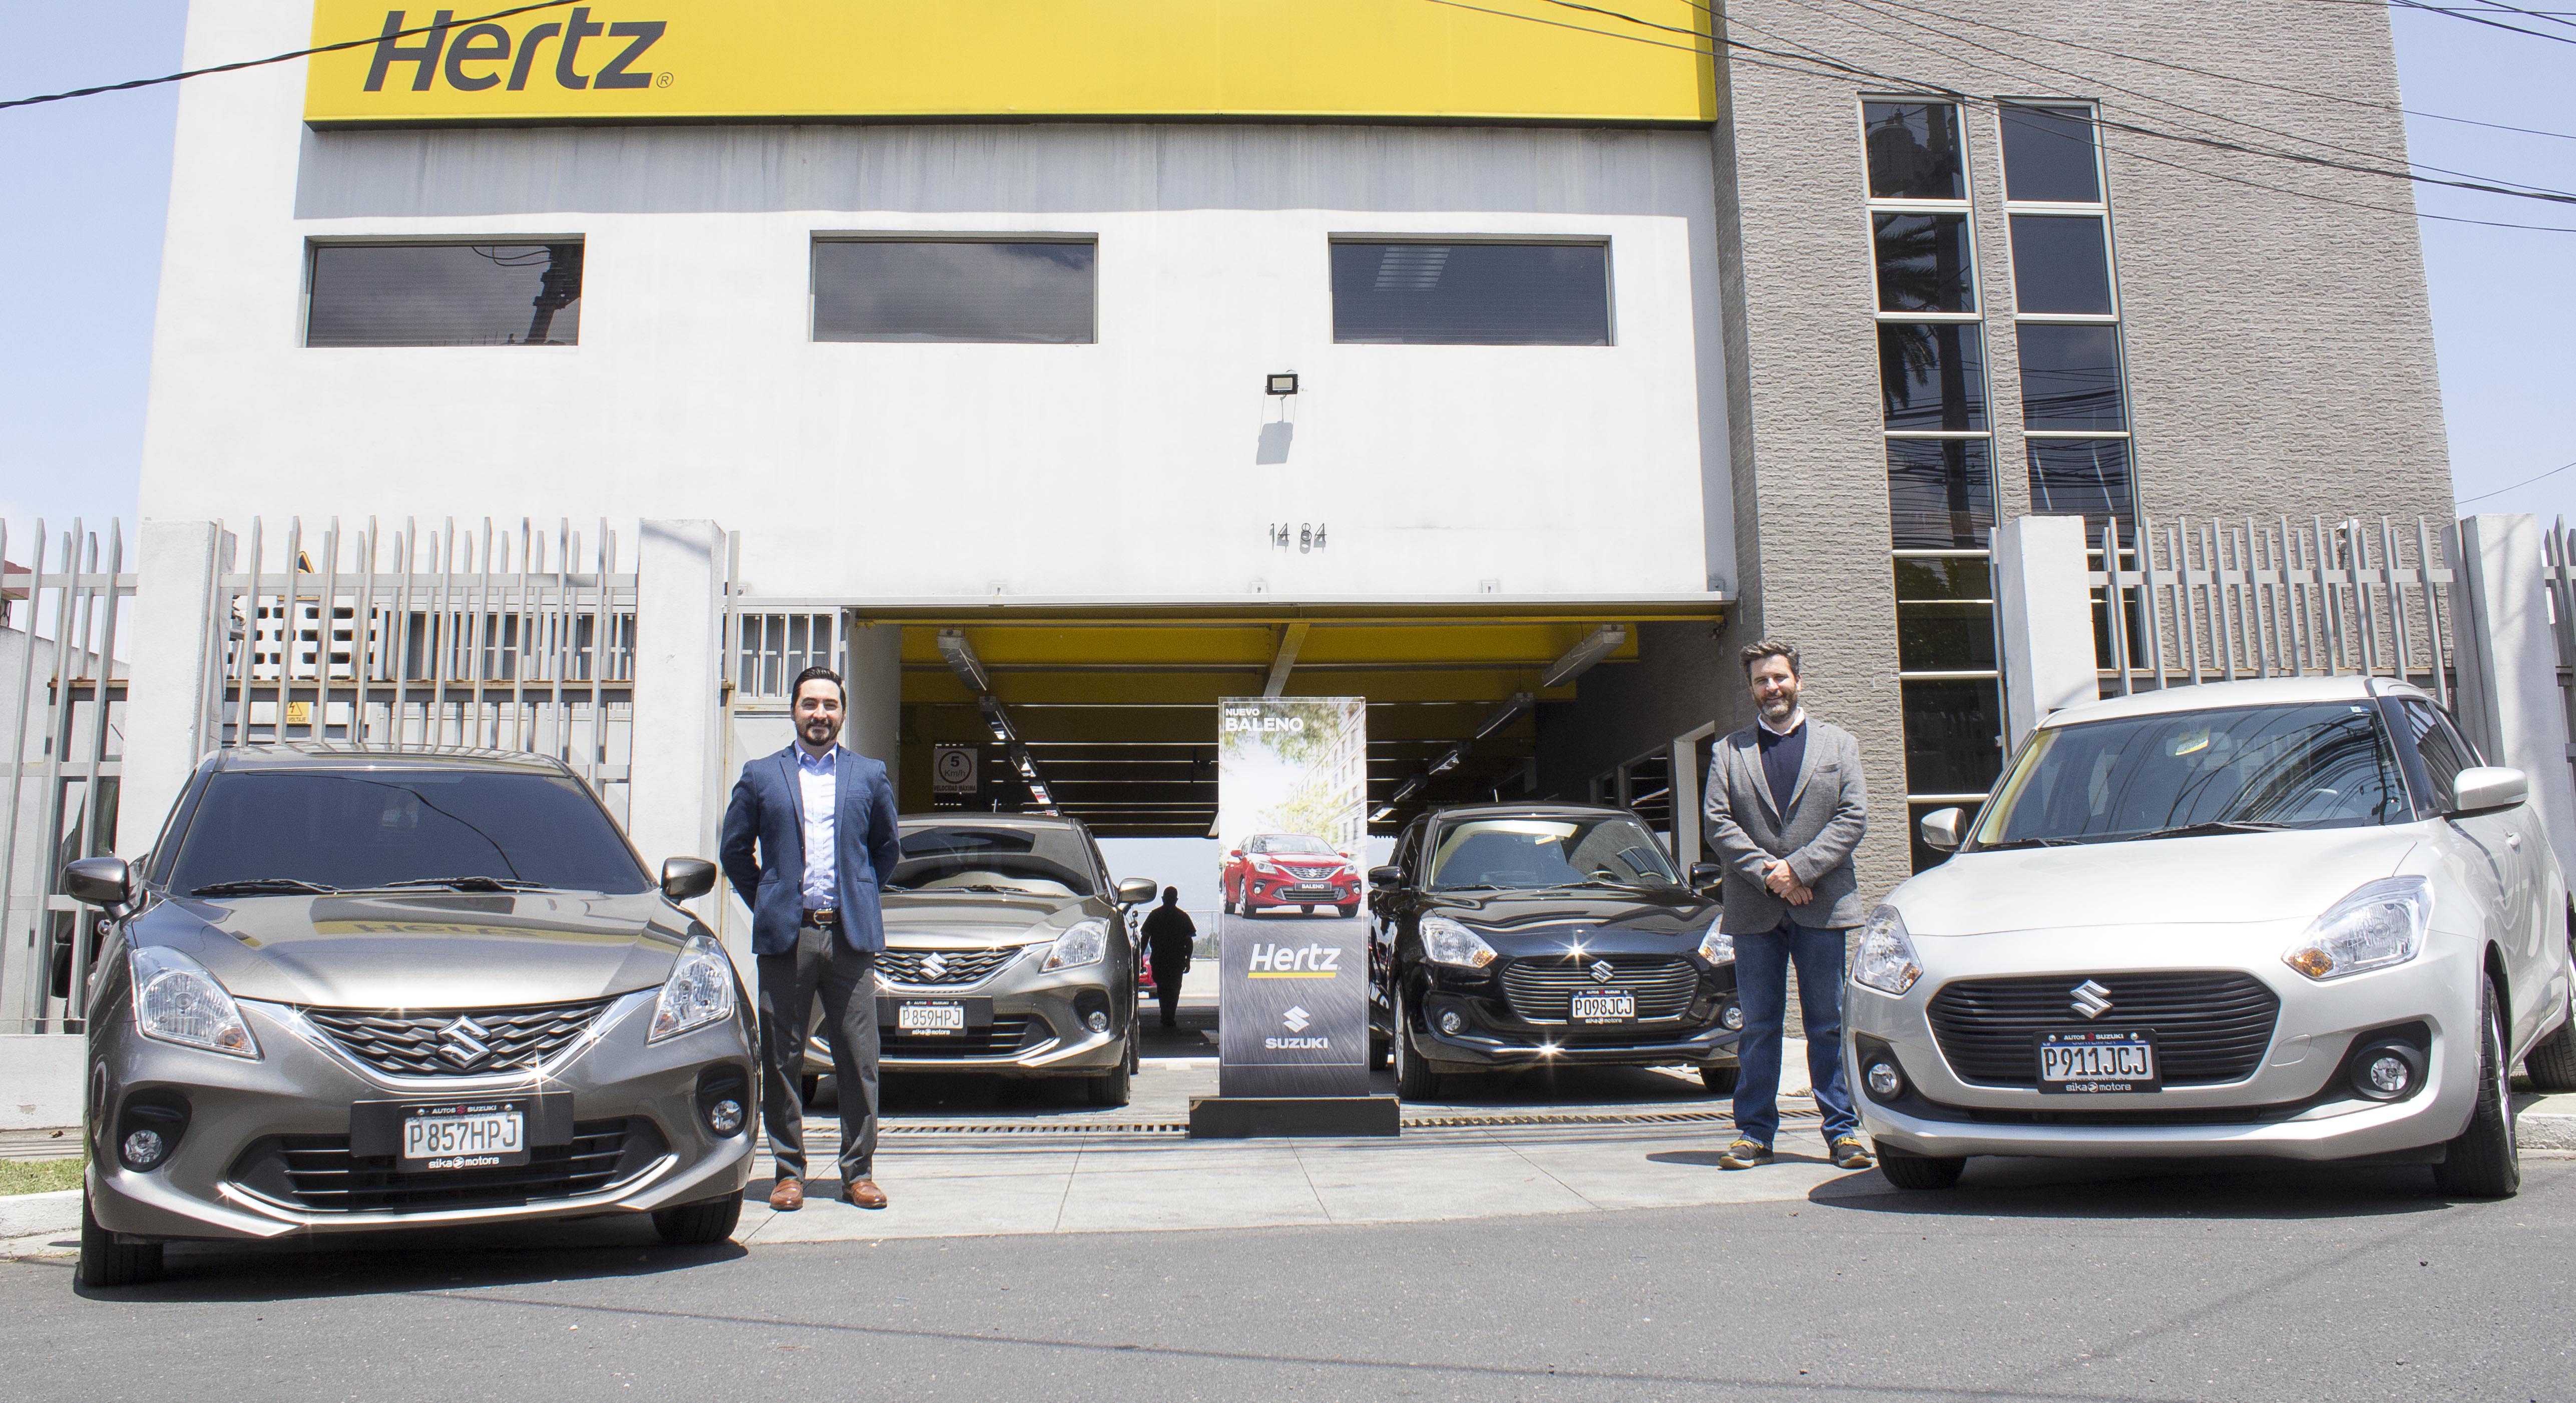 La alianza entre Autos Suzuki y Hertz proporcionará vehículos cómodos y seguros para sus clientes. Foto Prensa Libre: Cortesía Gaby Santisteban.